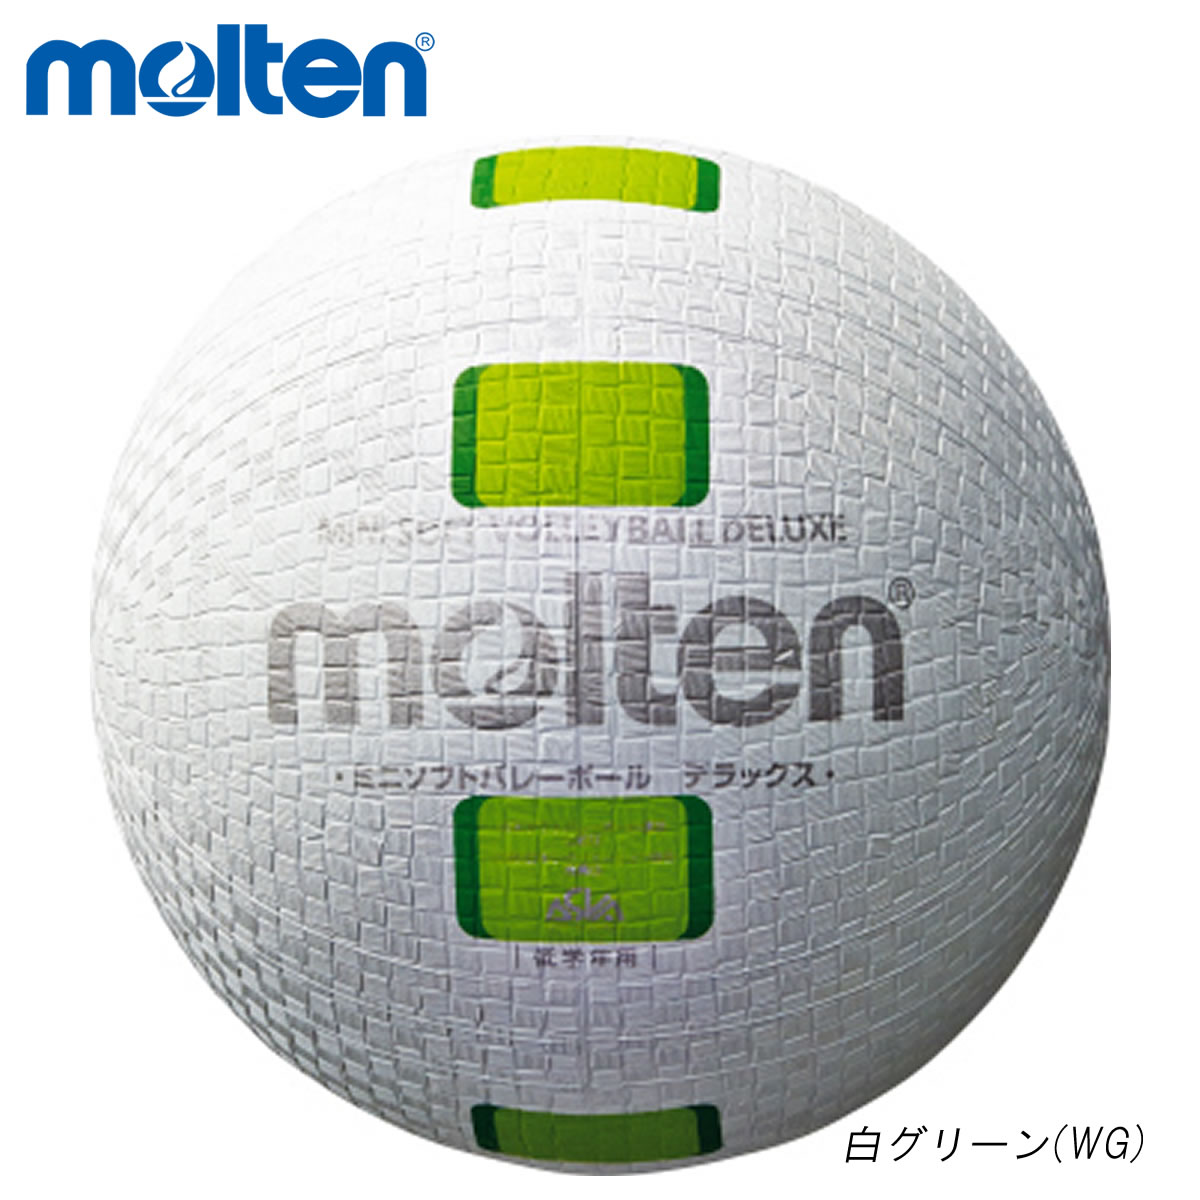 Molten S2y1500 Wg バレーボール ボール 現金特価 21 ミニソフトバレーボールデラックス モルテン